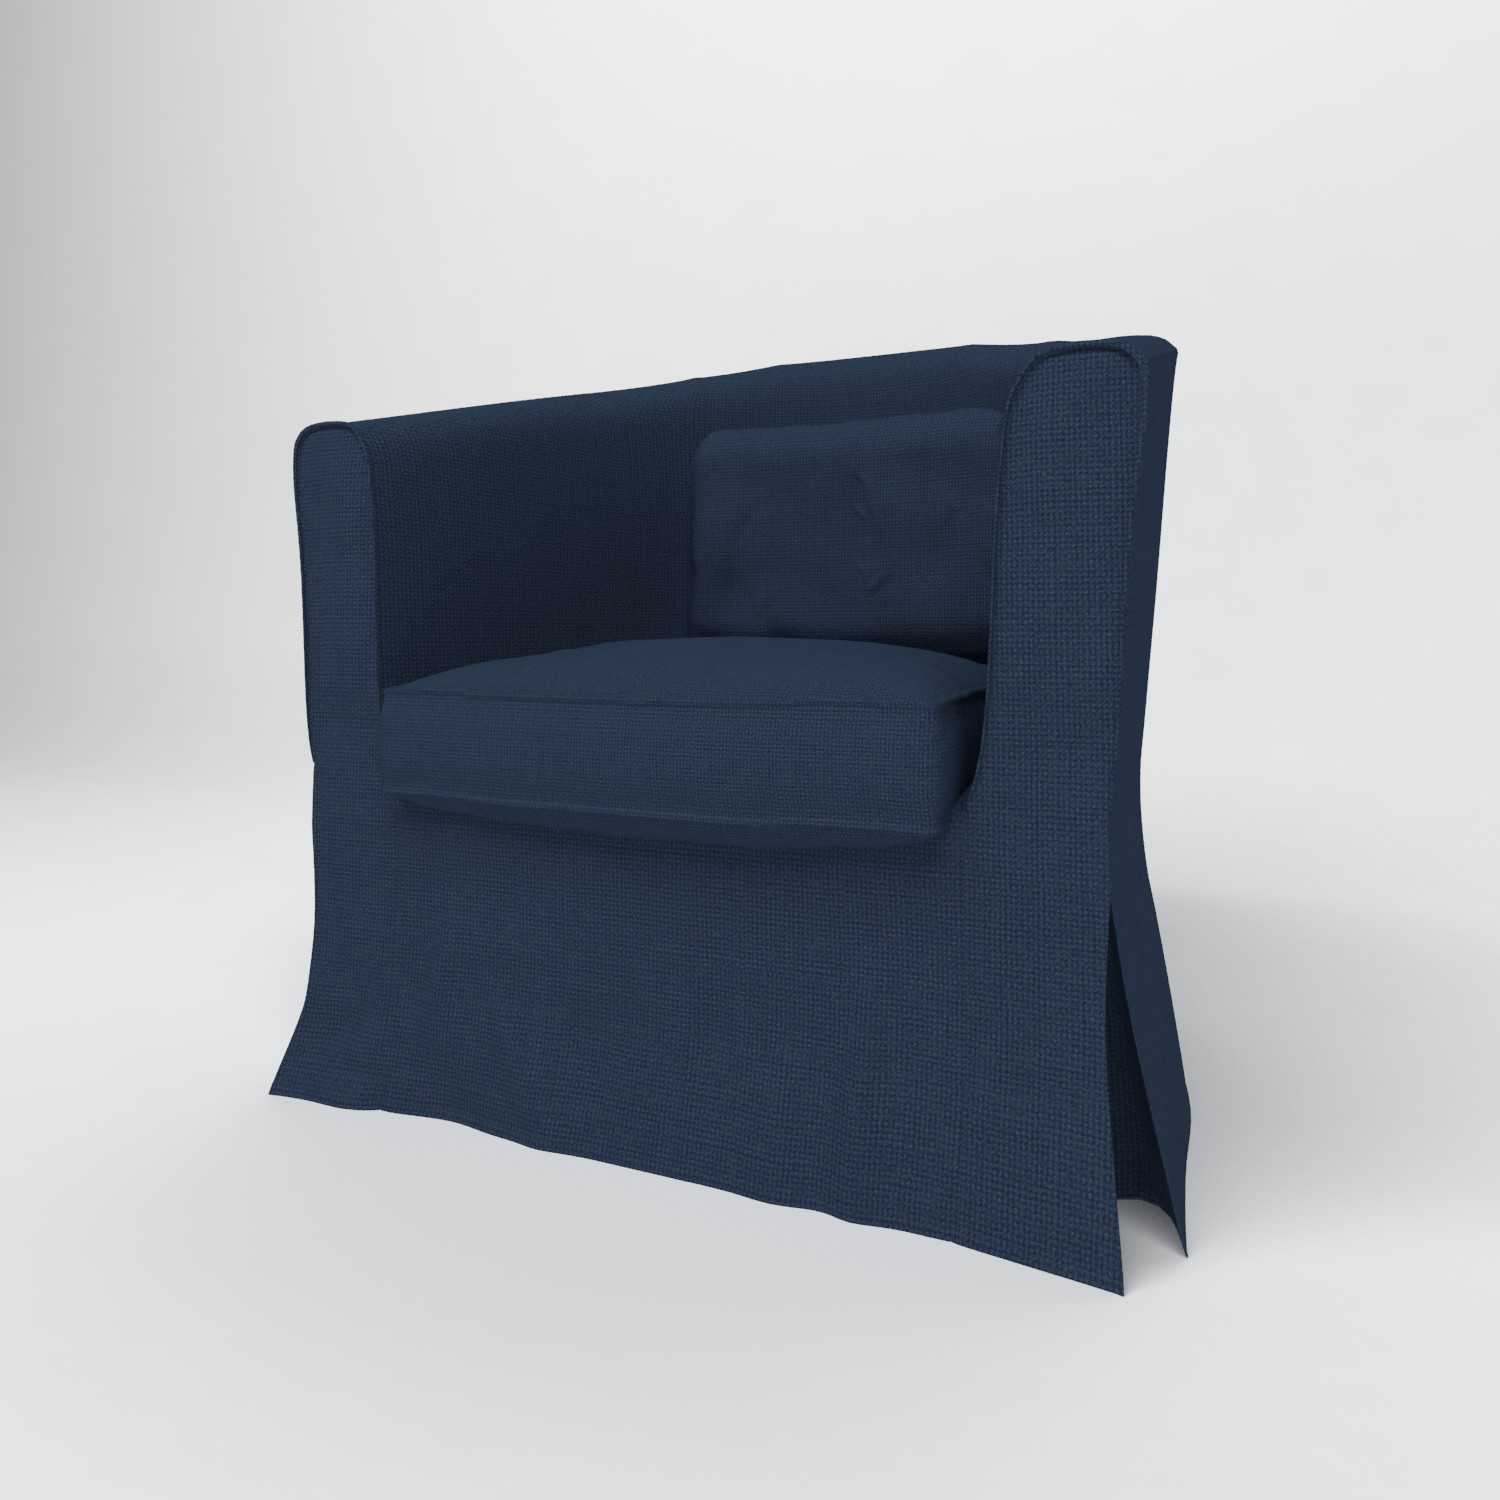 Чехлы на диваны и кресла ikea: универсальные натяжные модели «тульста» и «нильс»